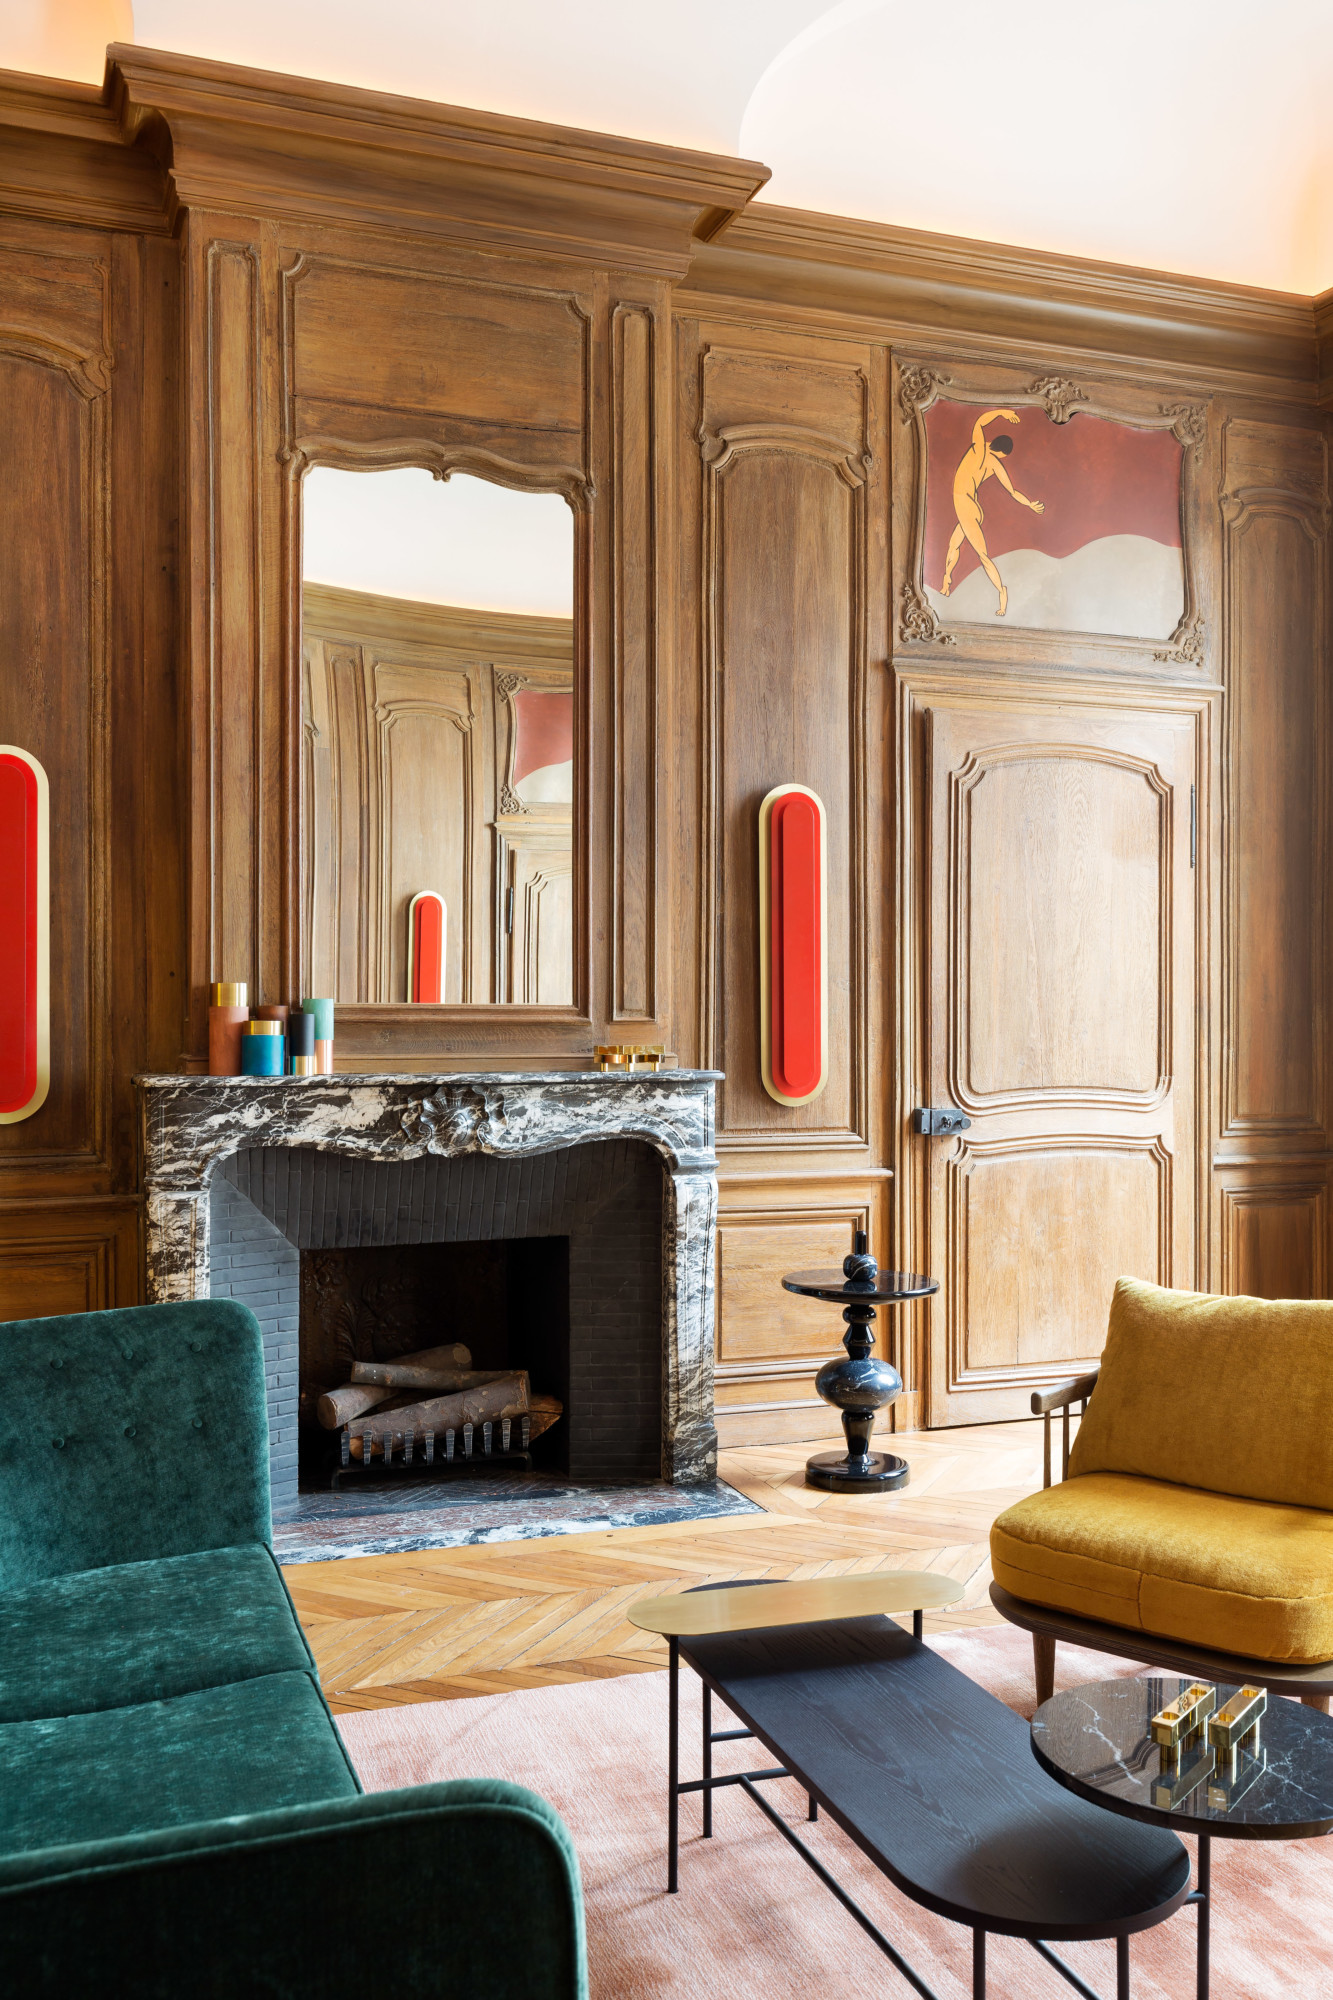 &Tradition — Coco Chanel's Parisian apartment